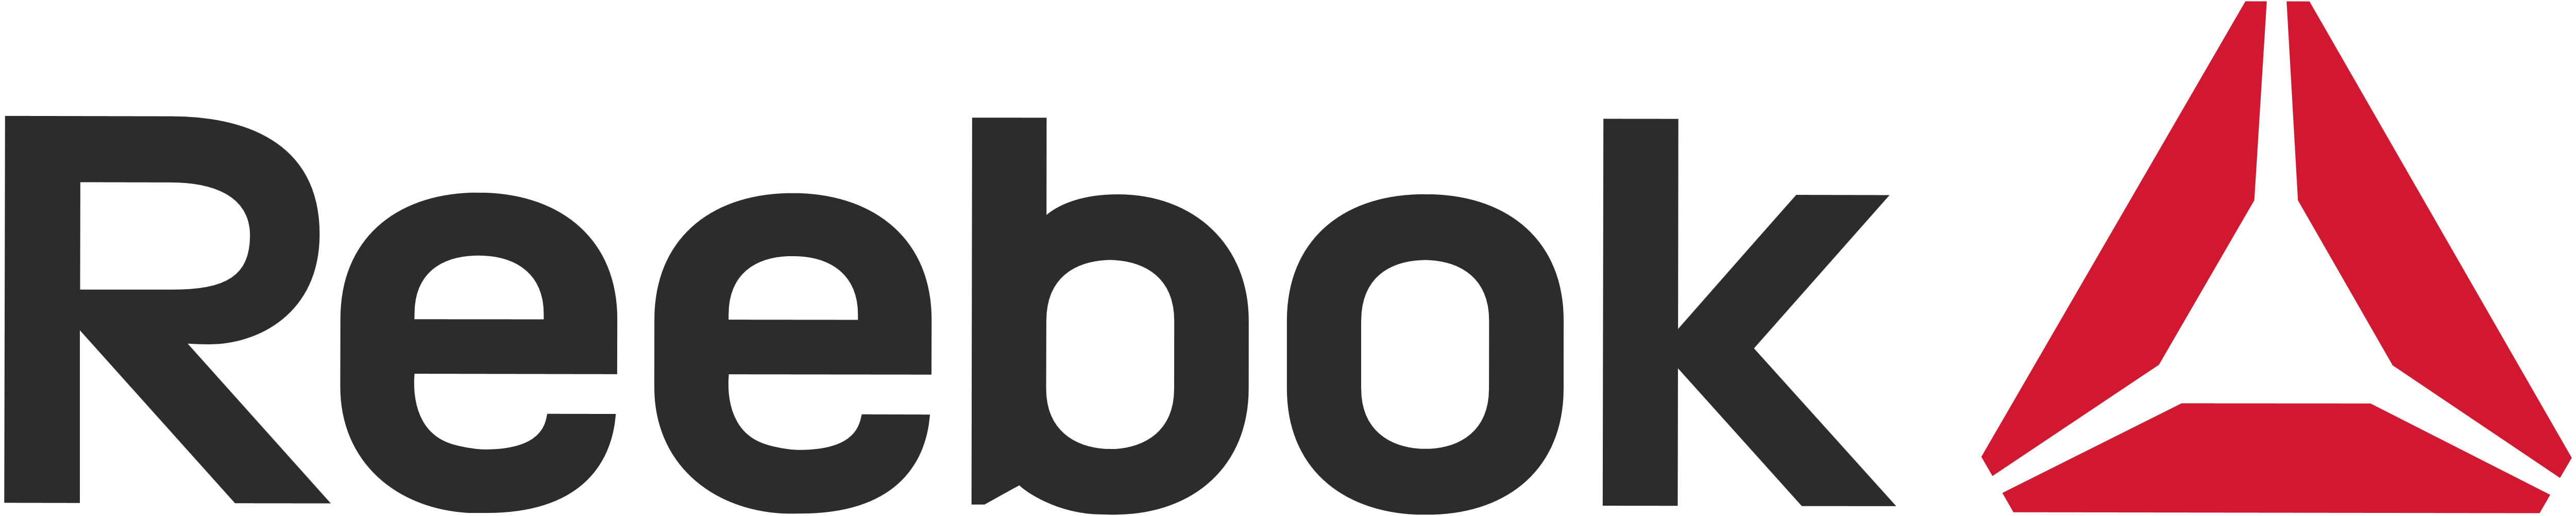 Reebok Logos